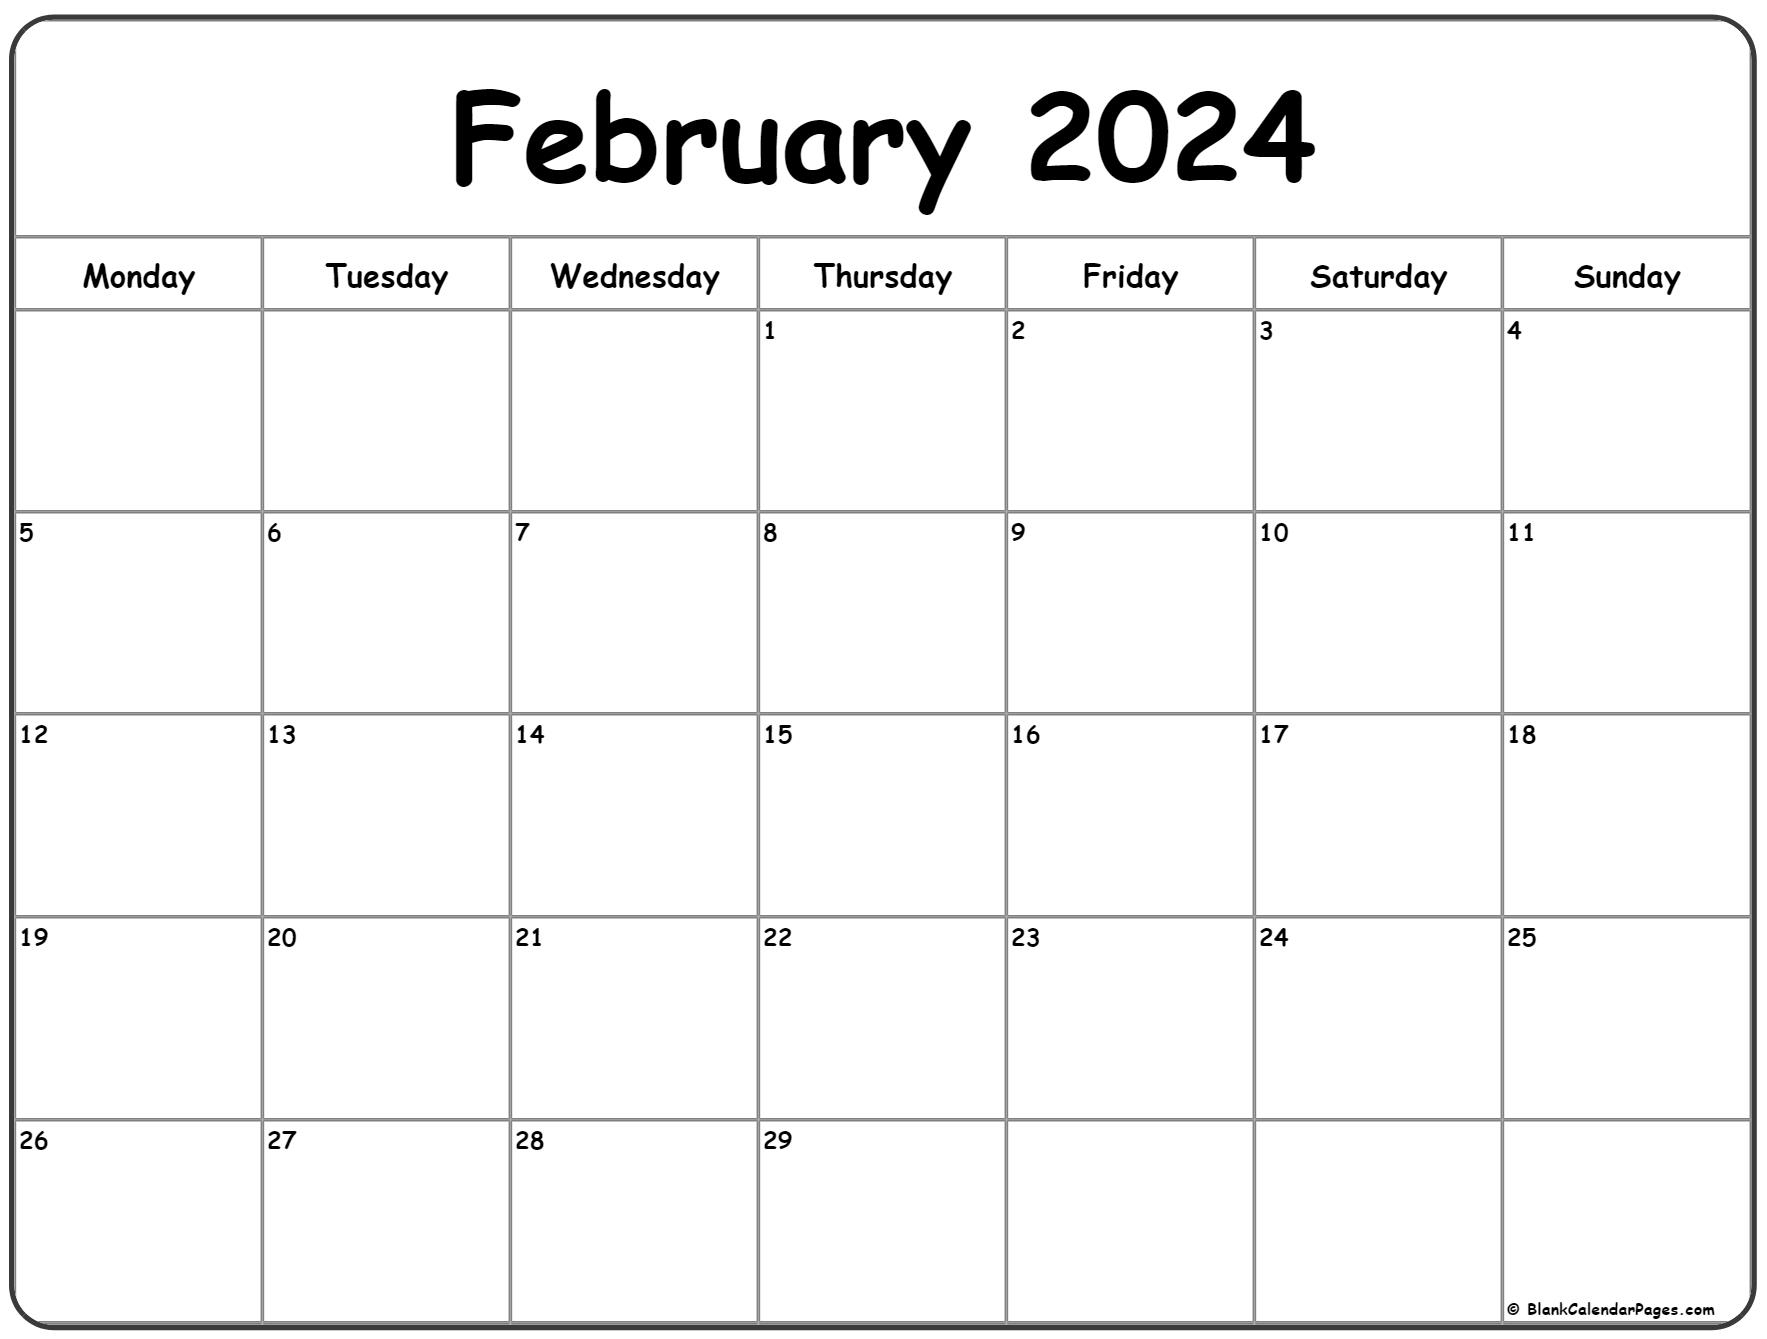 February 2024 Monday Calendar | Monday To Sunday for Printable 2024 Calendar February